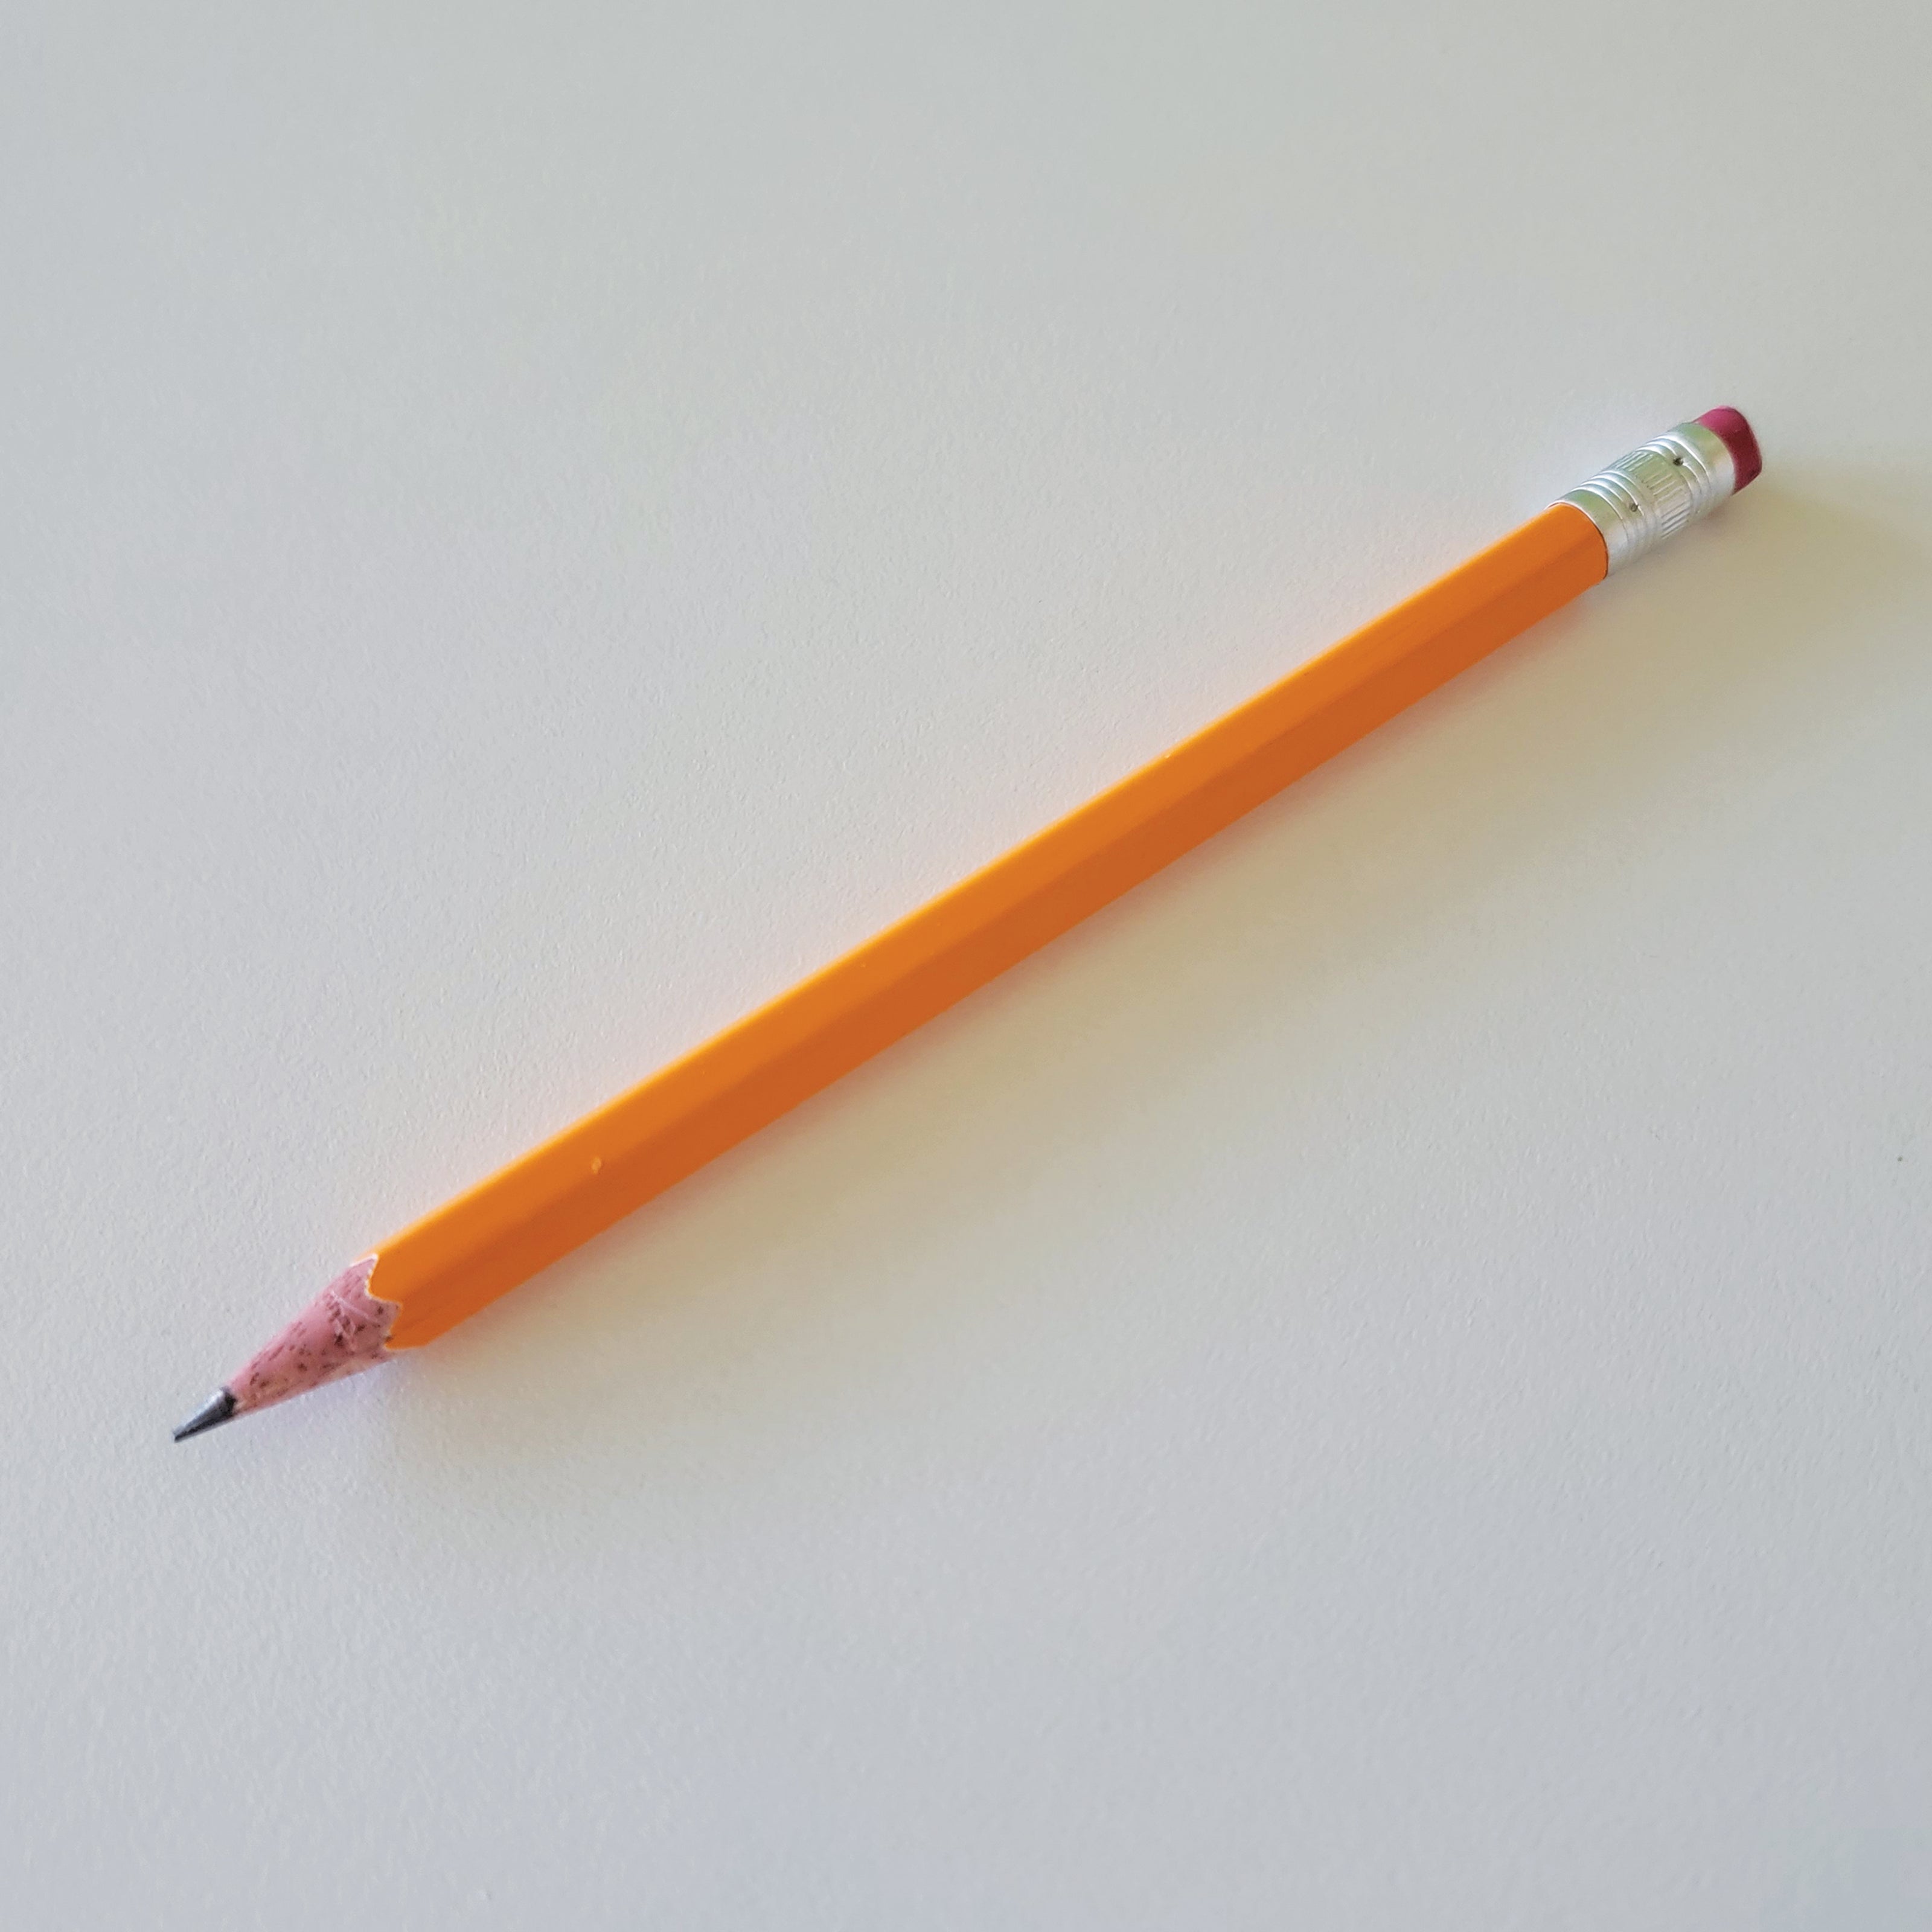 a yellow pencil